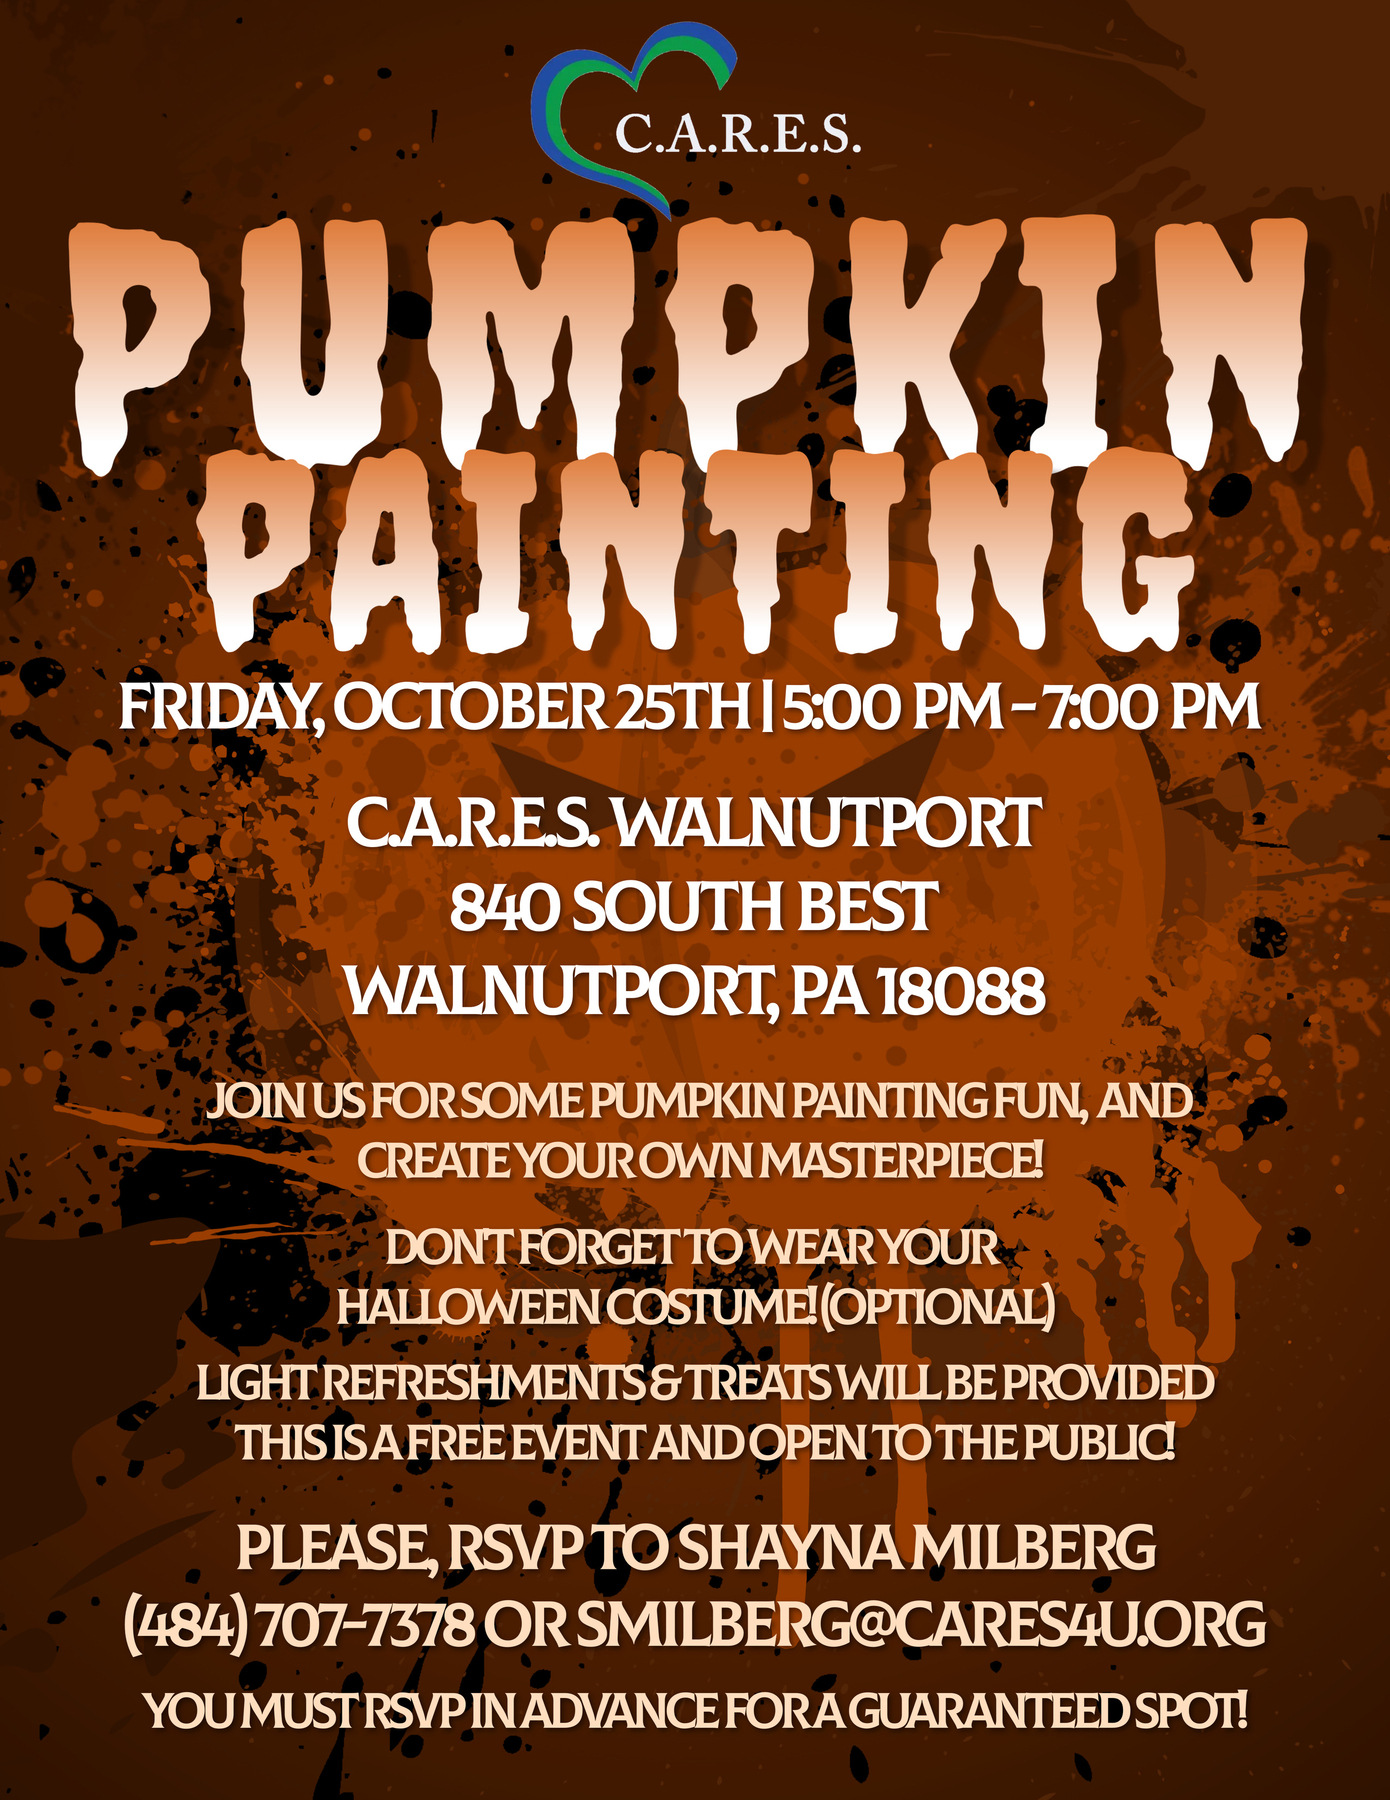 C.A.R.E.S. Pumpkin Painting - WALNUTPORT 3